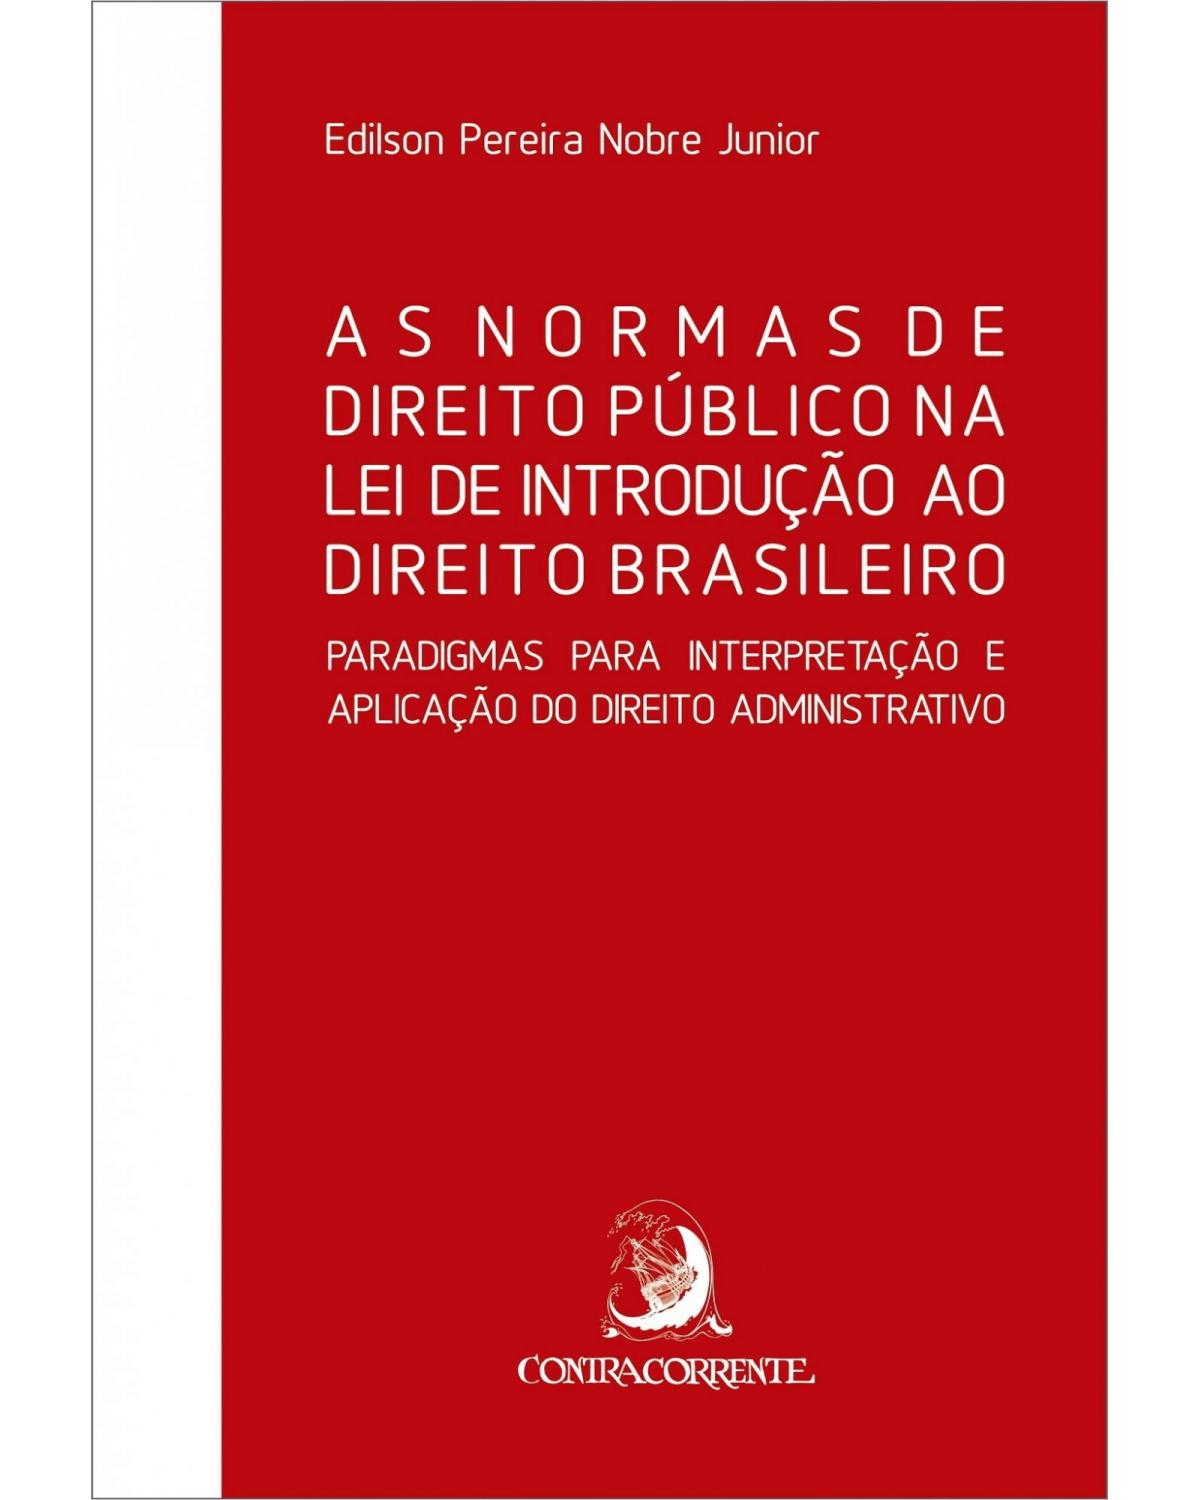 As normas de direito público na lei de introdução ao direito brasileiro - paradigmas para interpretação e aplicação do direito administrativo - 1ª Edição | 2019